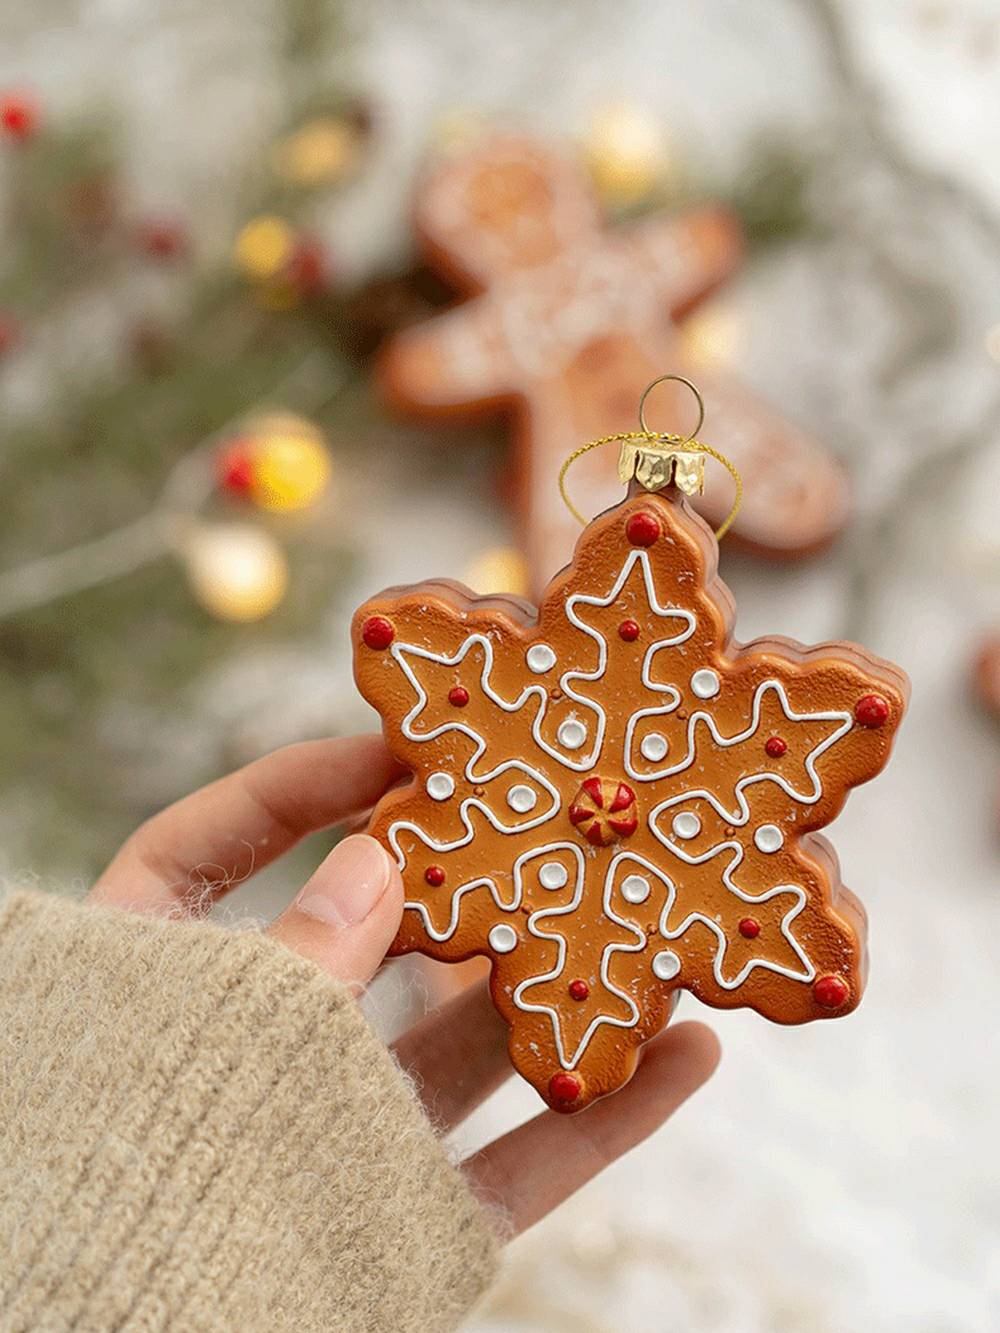 Hëlzent Gingerbread Man - Snowflake Reindeer Chrëschtdag Dekoratioun